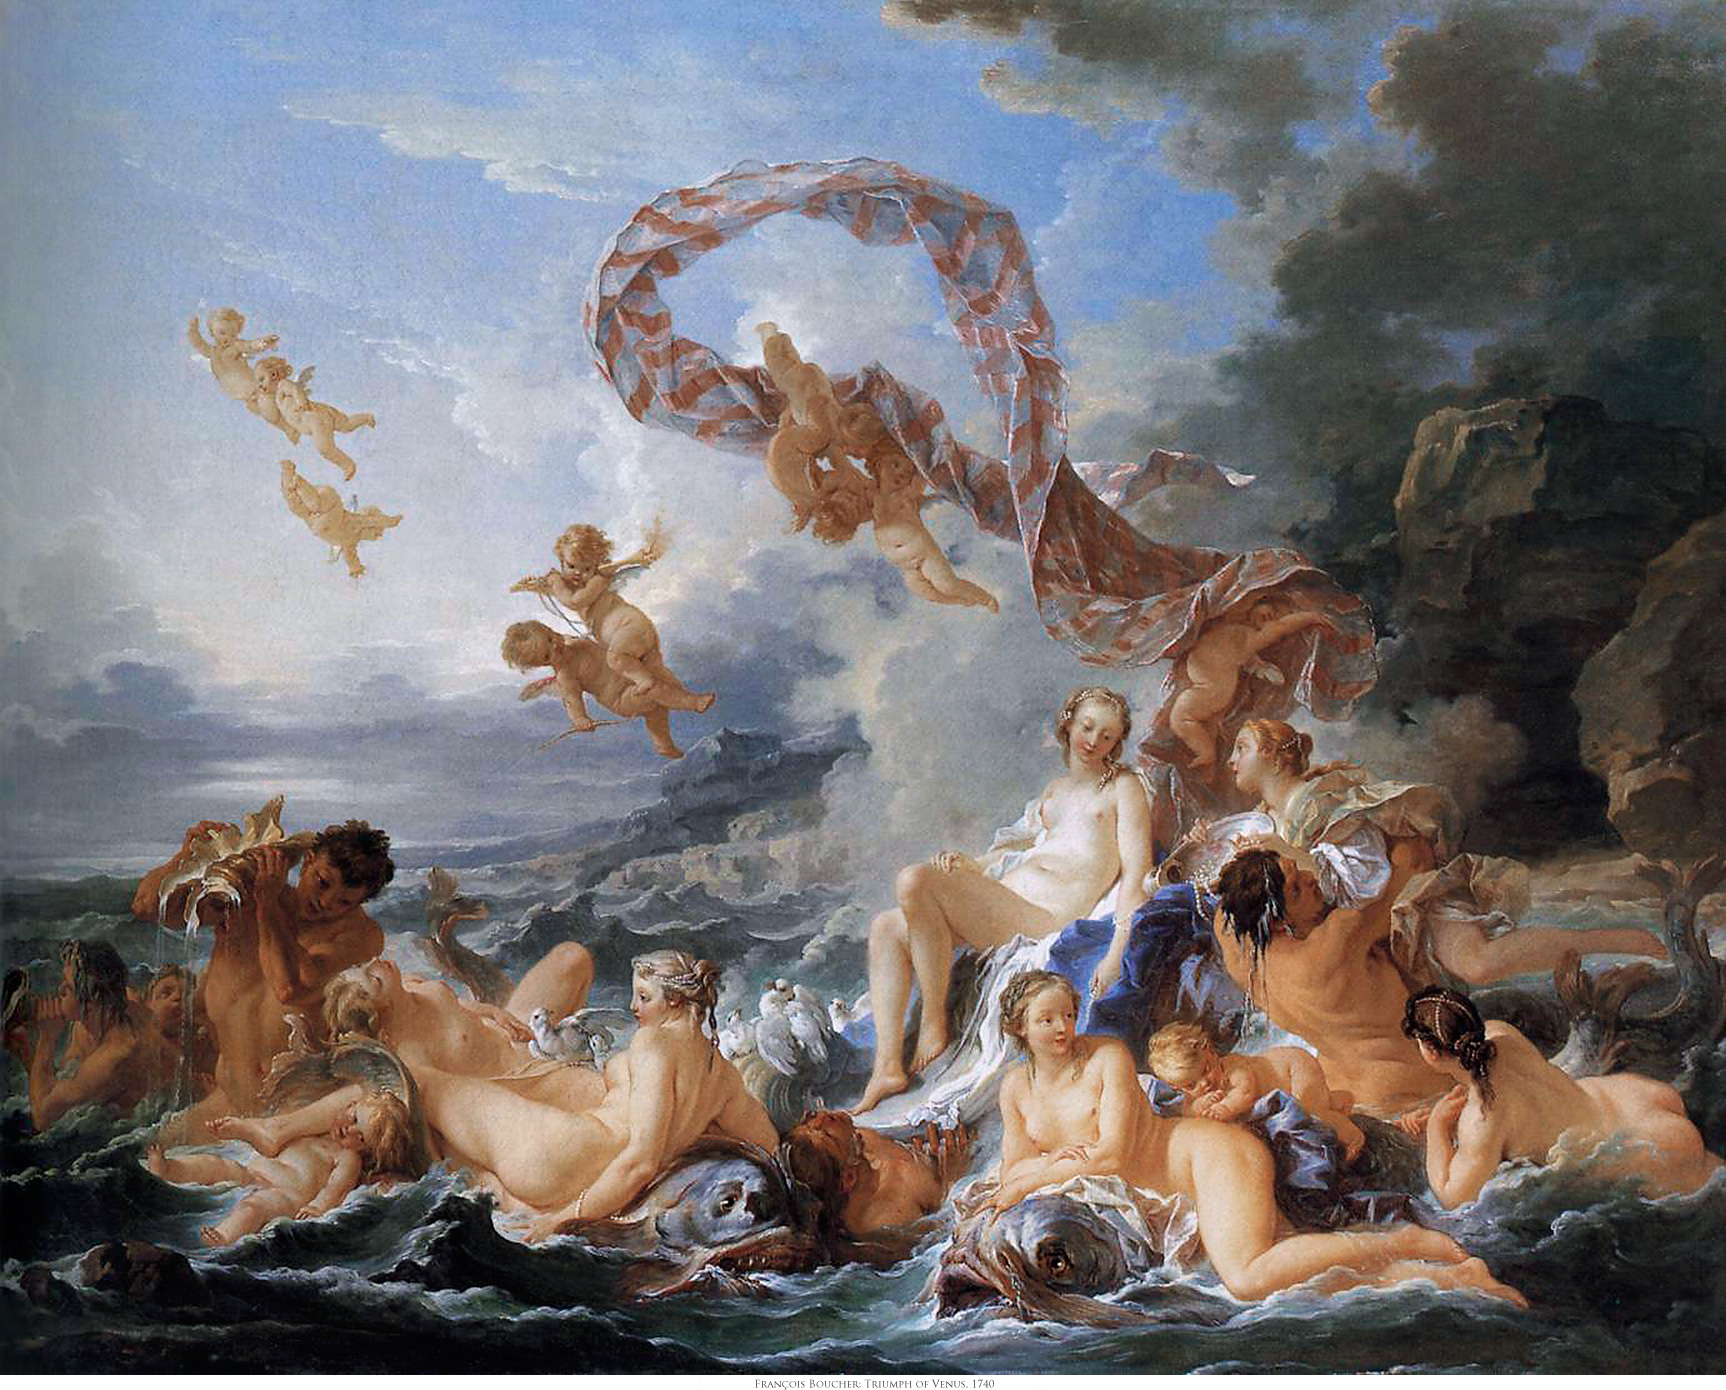 El triunfo de Venus by Francois Boucher - 1740 Museo Nacional de Estocolmo